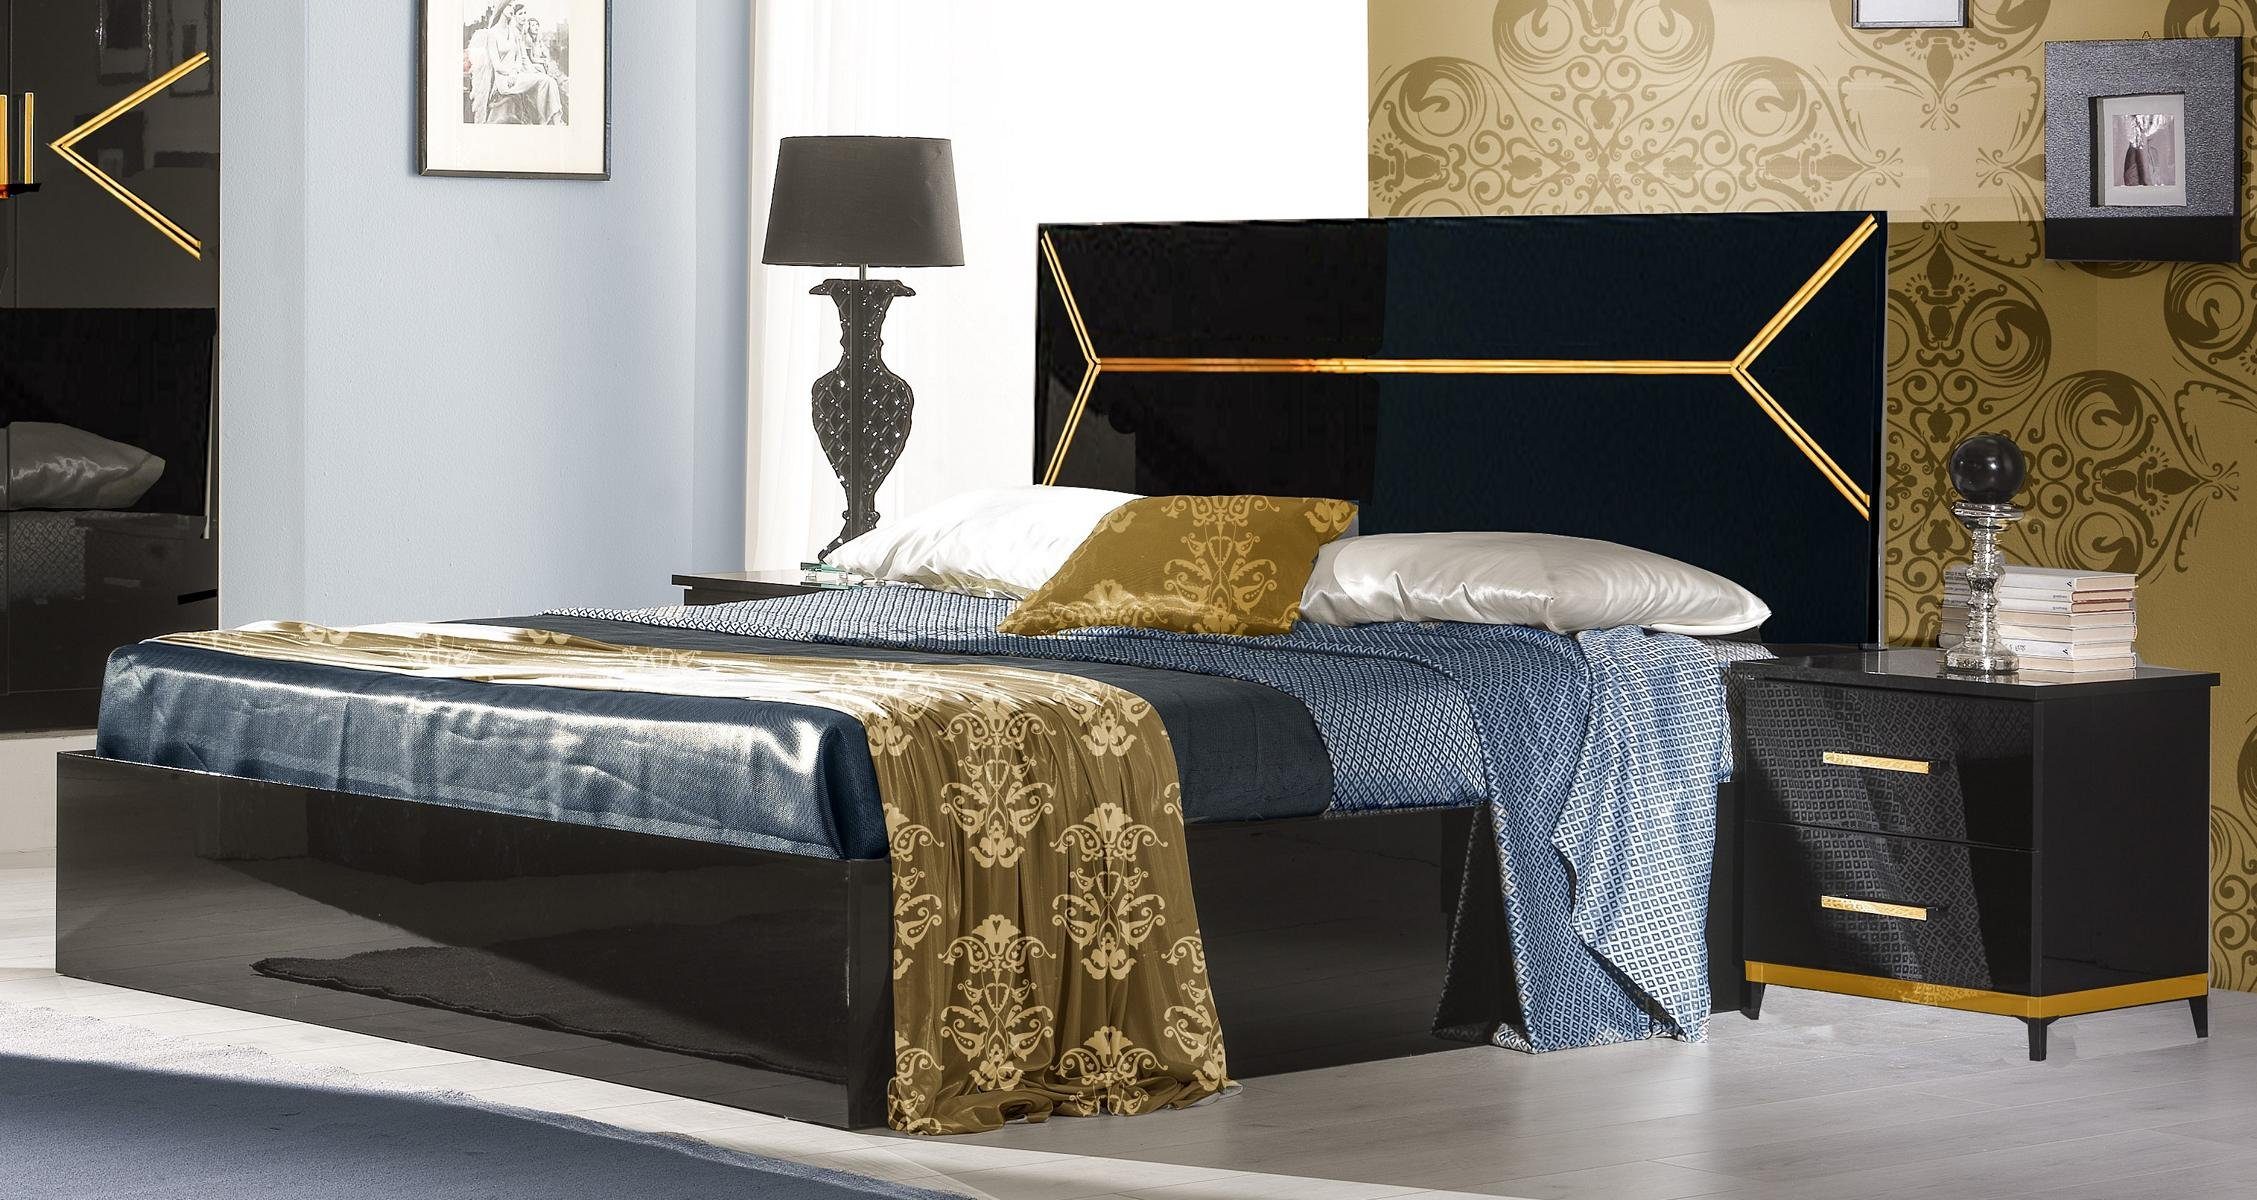 JVmoebel Bett, Klassisches Stil Betten Leder Doppel Hotel Bett Moderne Schlafzimmer